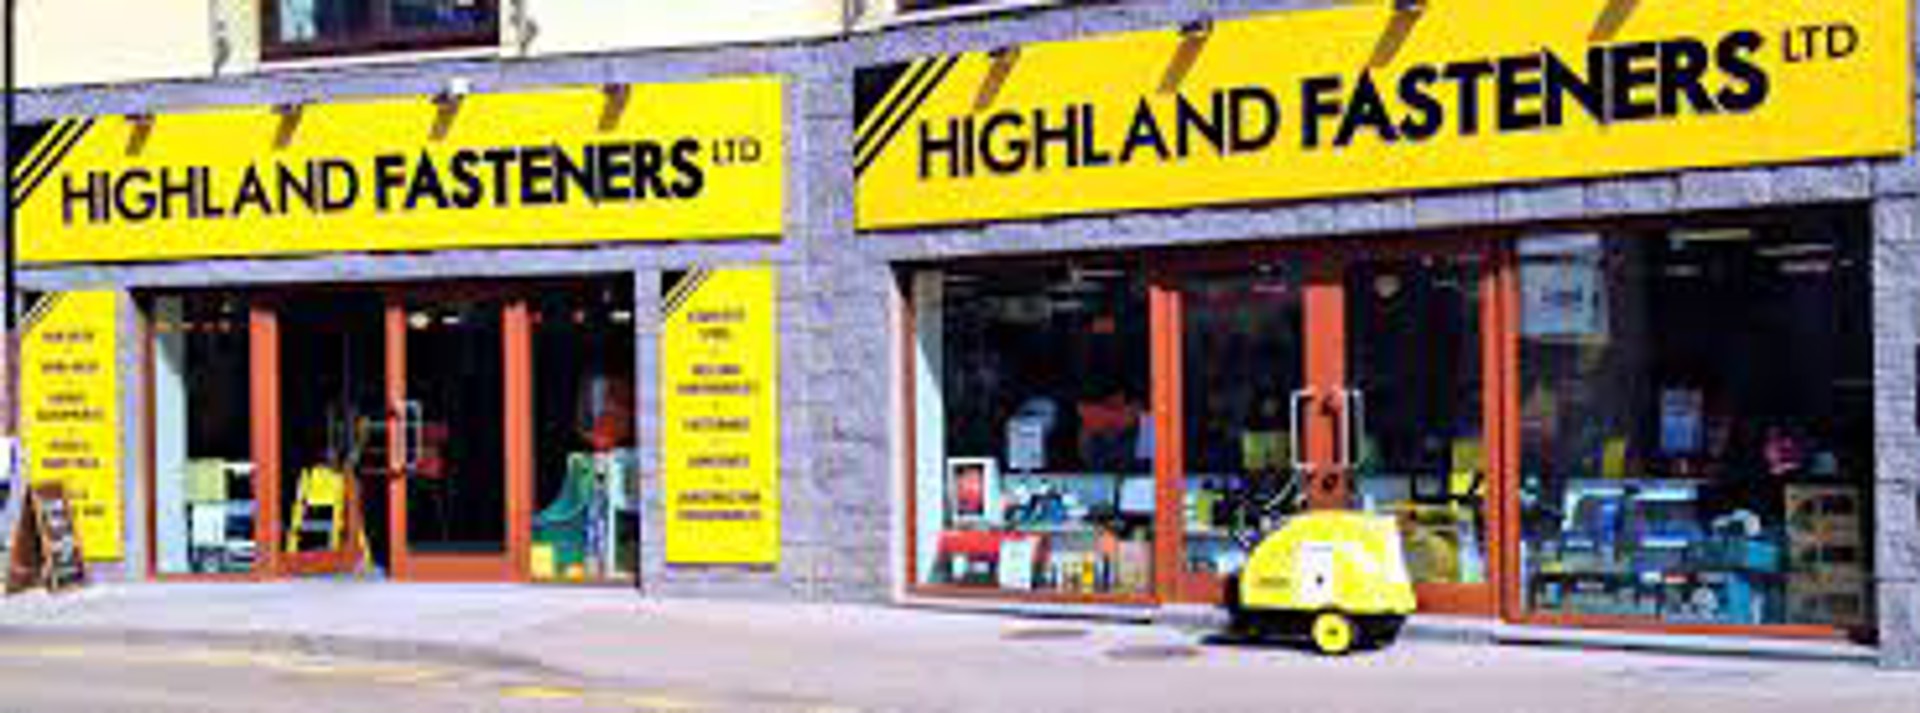 Background image - Highland Fasteners